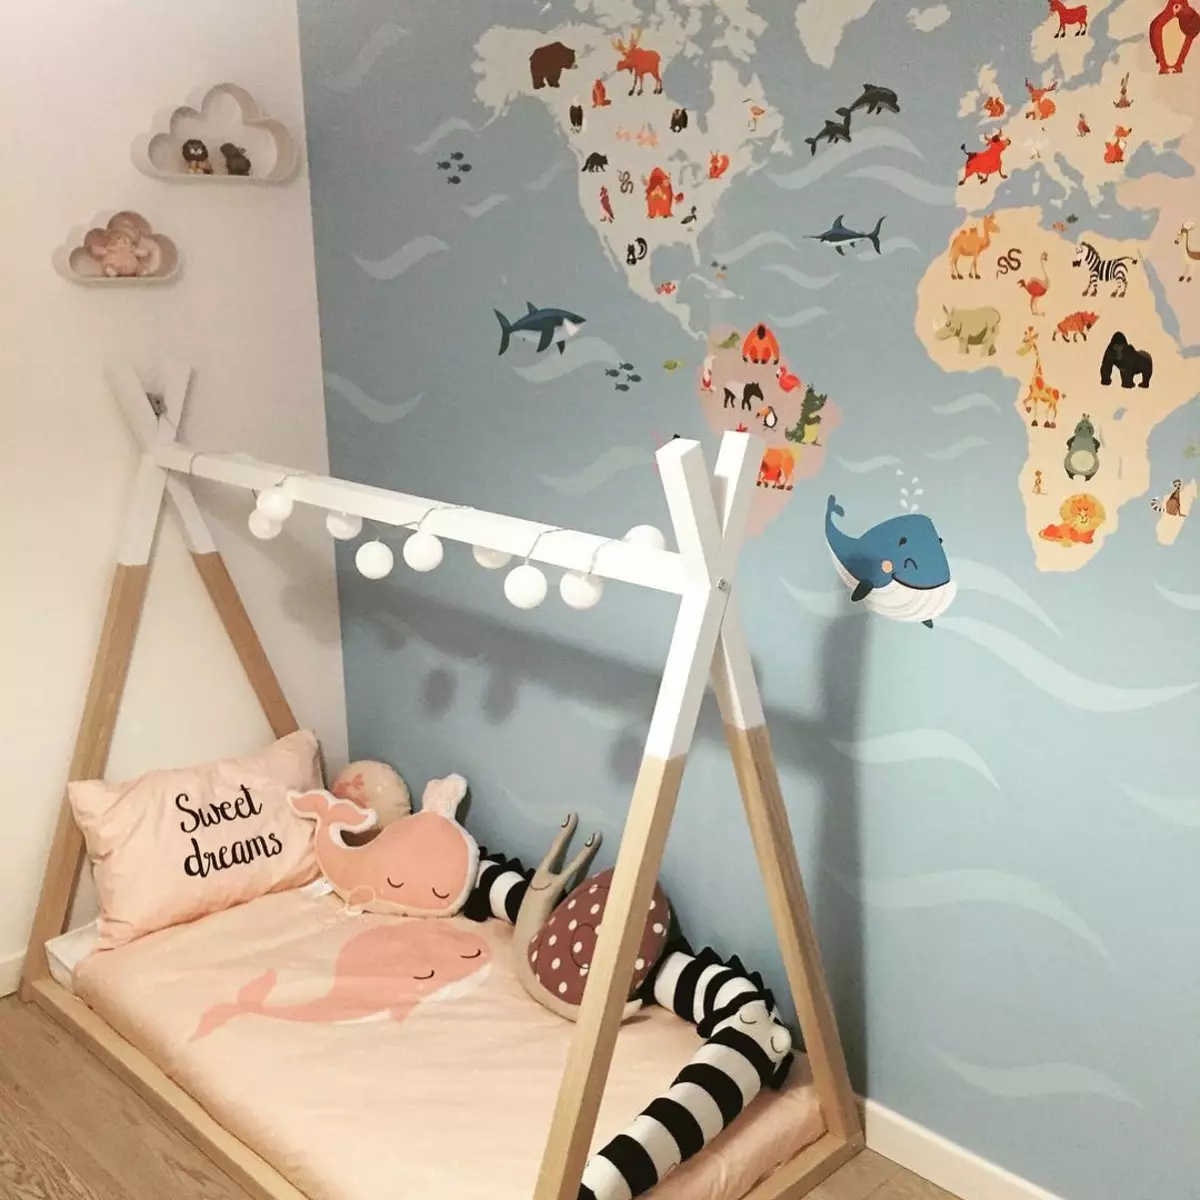 Børns verdenskort på værelset foto